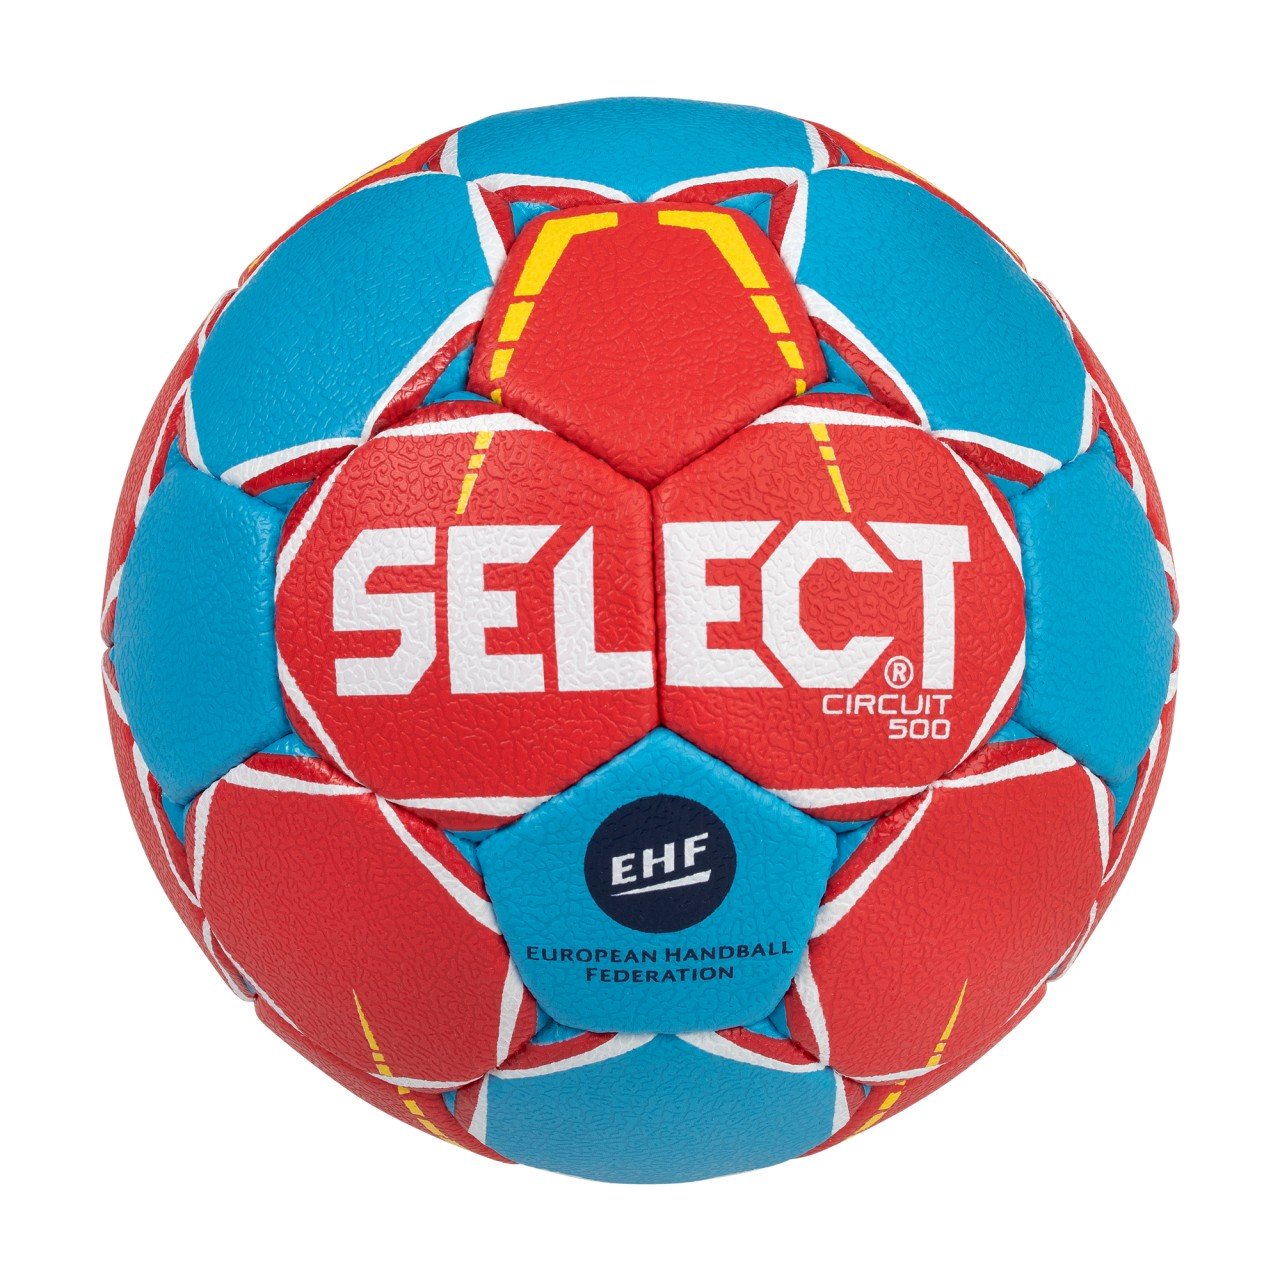 Select欧州限定版 ハンドボールサーキット トレーニングボール レッド ブルー 海外スポーツグッズkitahefu